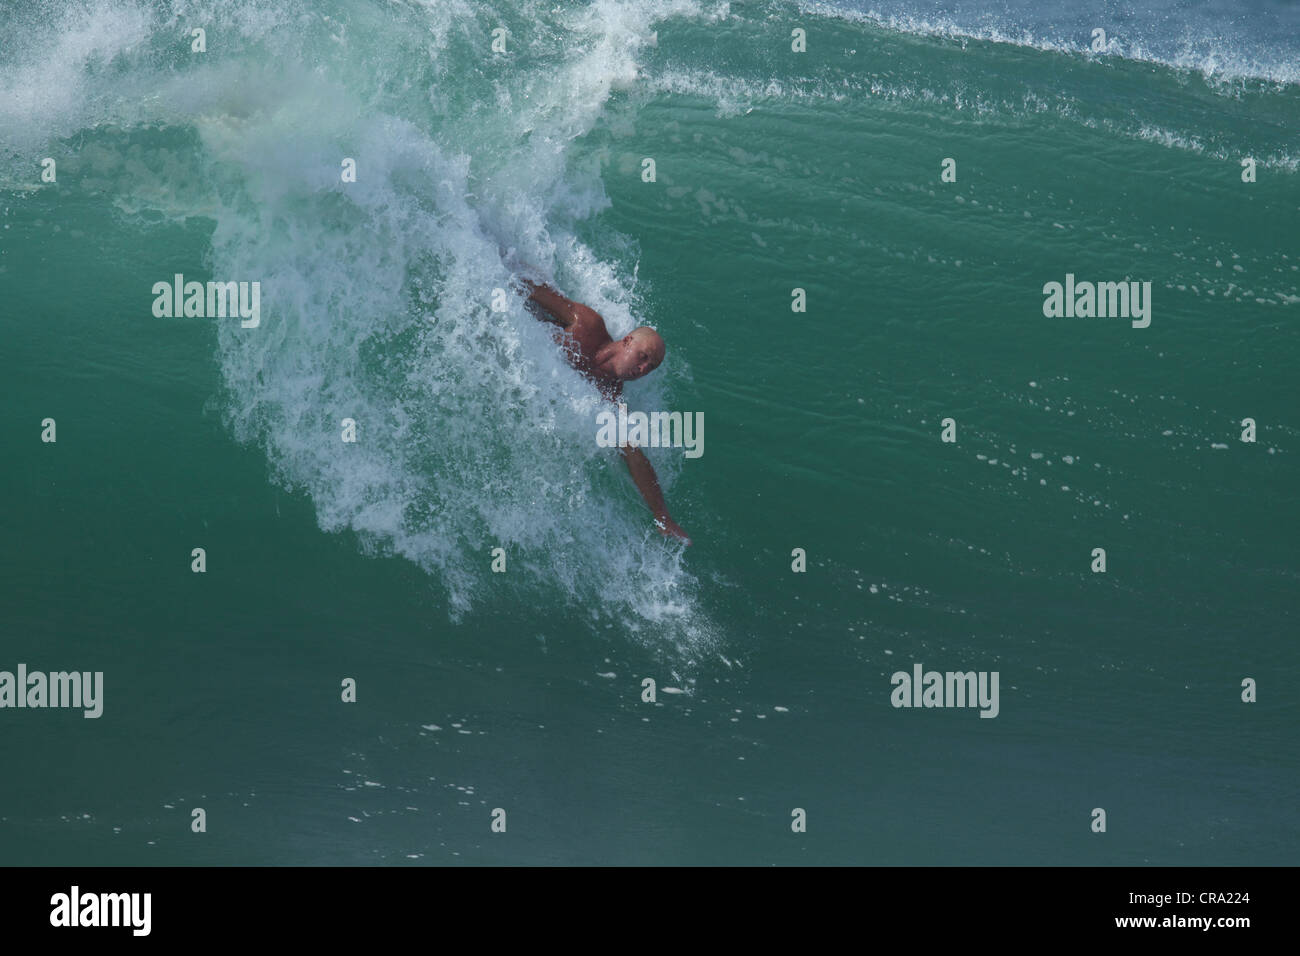 Un corpo del surfista a cavallo di un enorme ondata a cuneo Newport Beach California USA Foto Stock